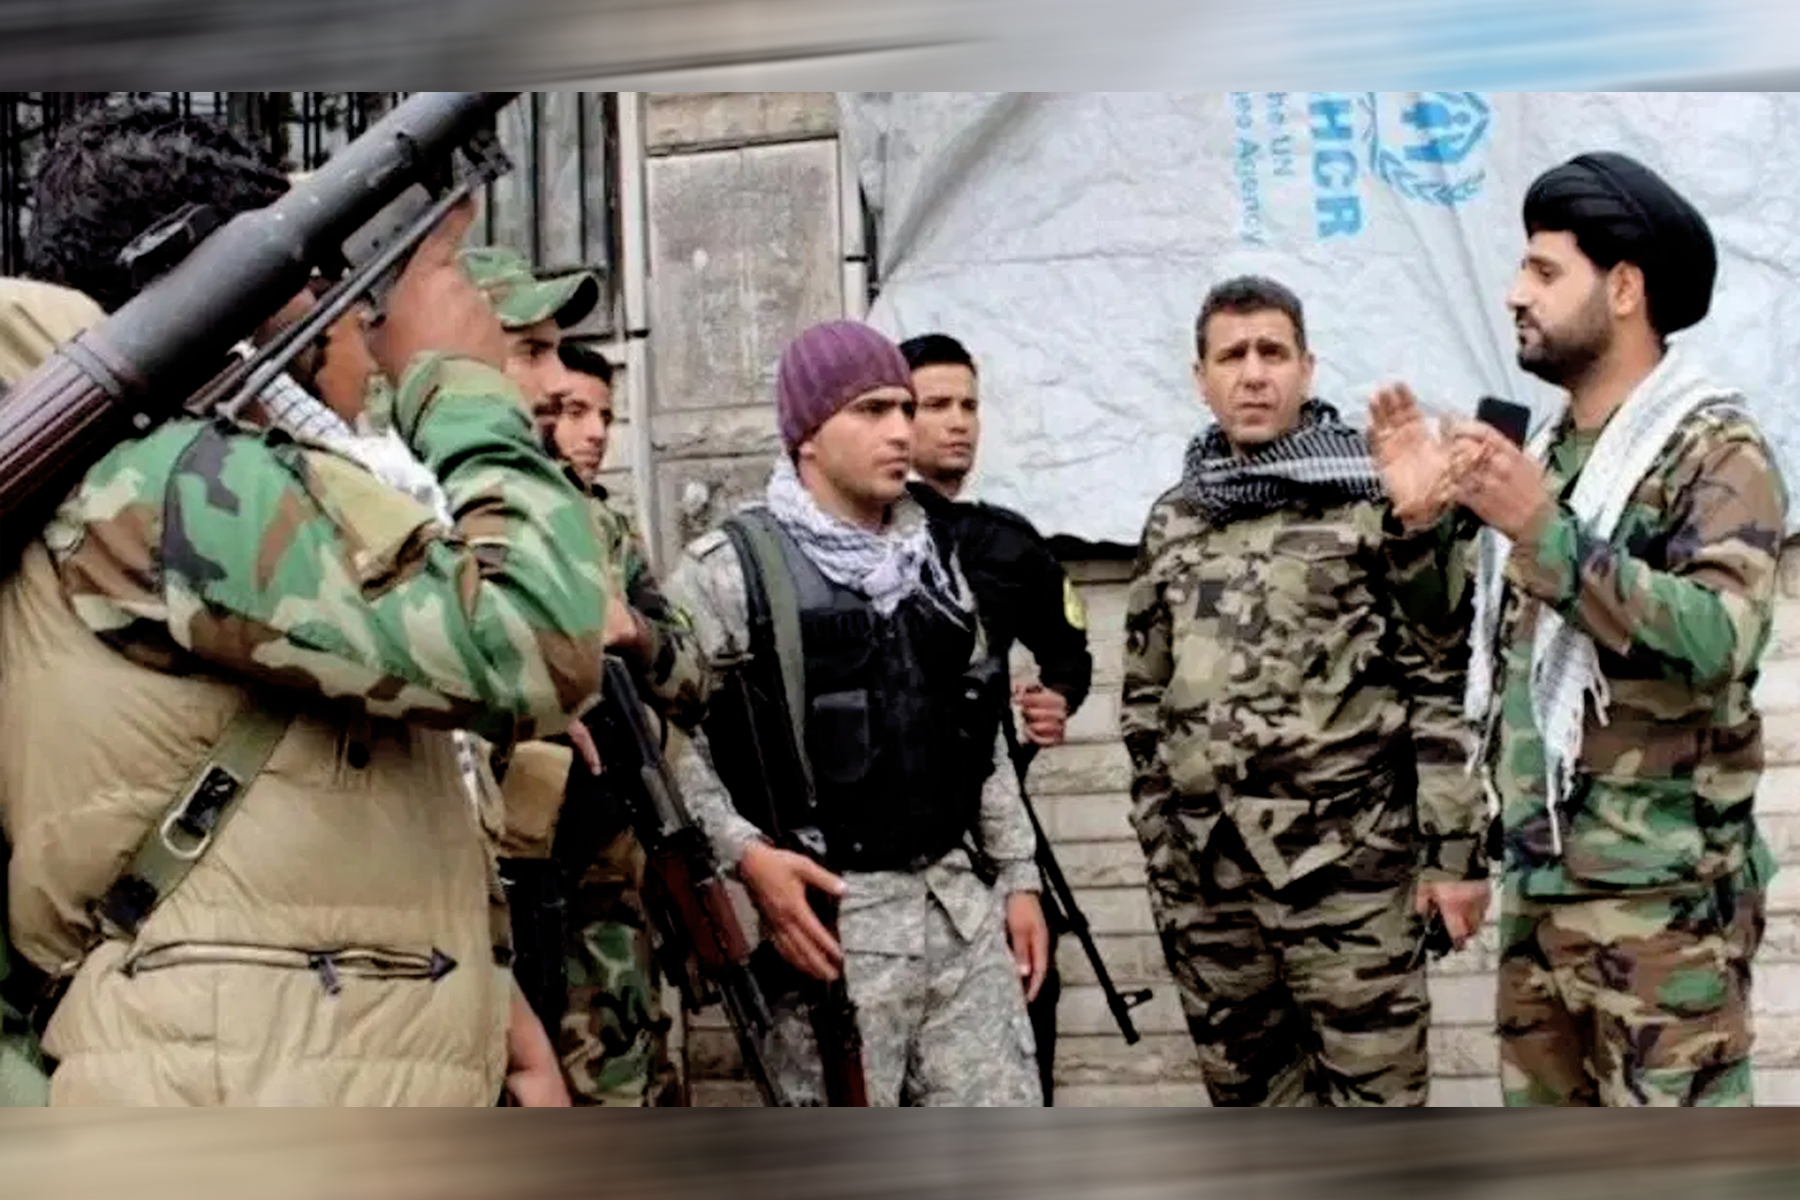 شبه نظامیان مورد حمایت ایران نزدیک به 40 خانه و مغازه را در شهر المیادین تصرف میکنند